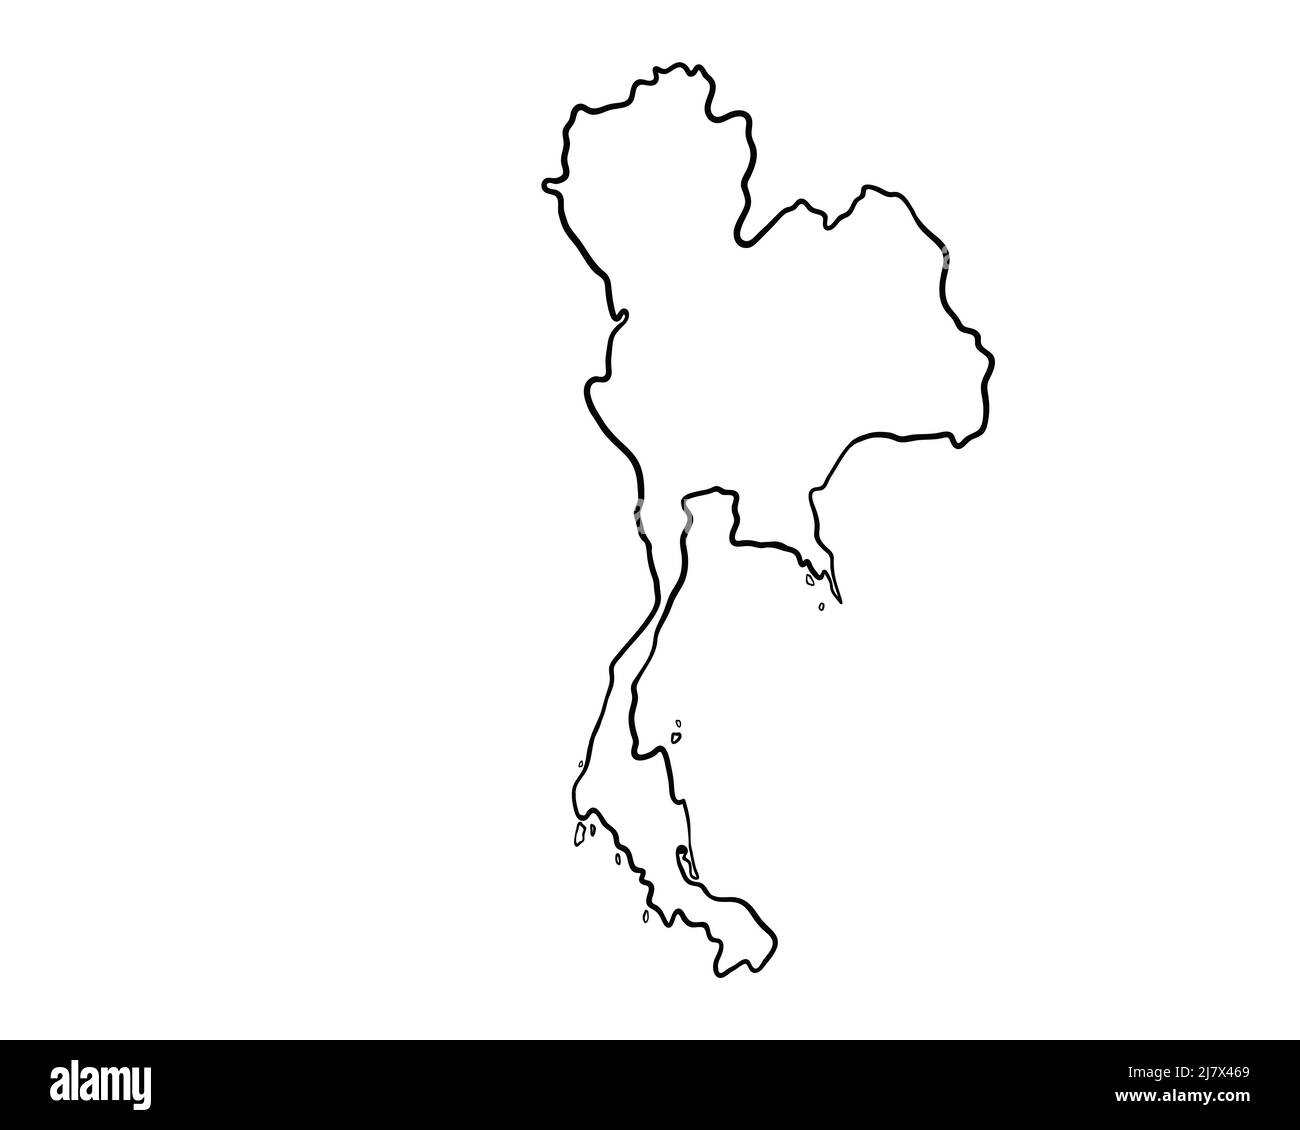 Thailandia - disegno a mano mappa llustration Foto Stock